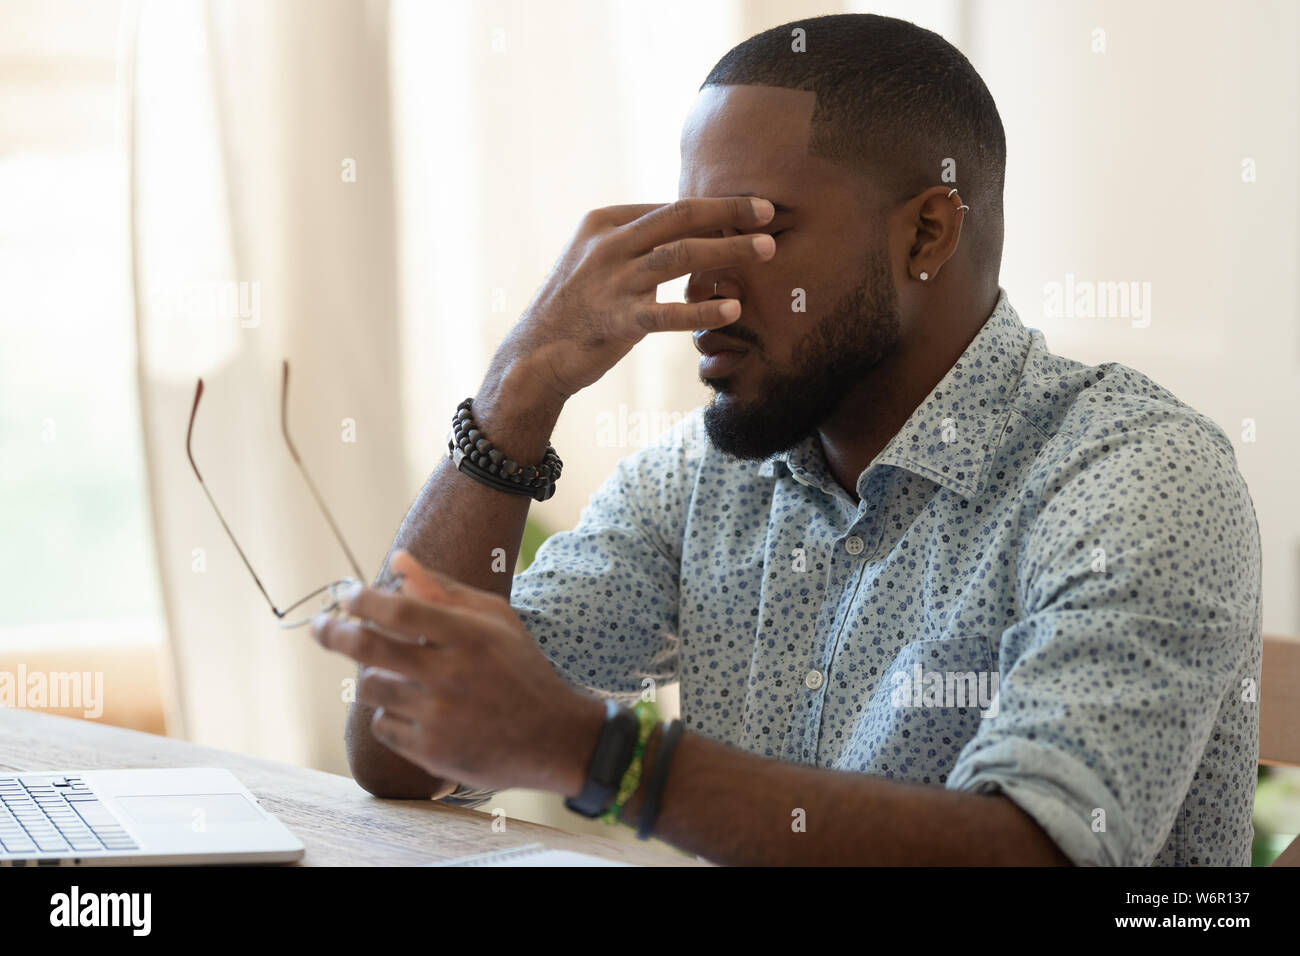 Stanco African American businessman holding bicchieri sensazione di affaticamento della vista Foto Stock